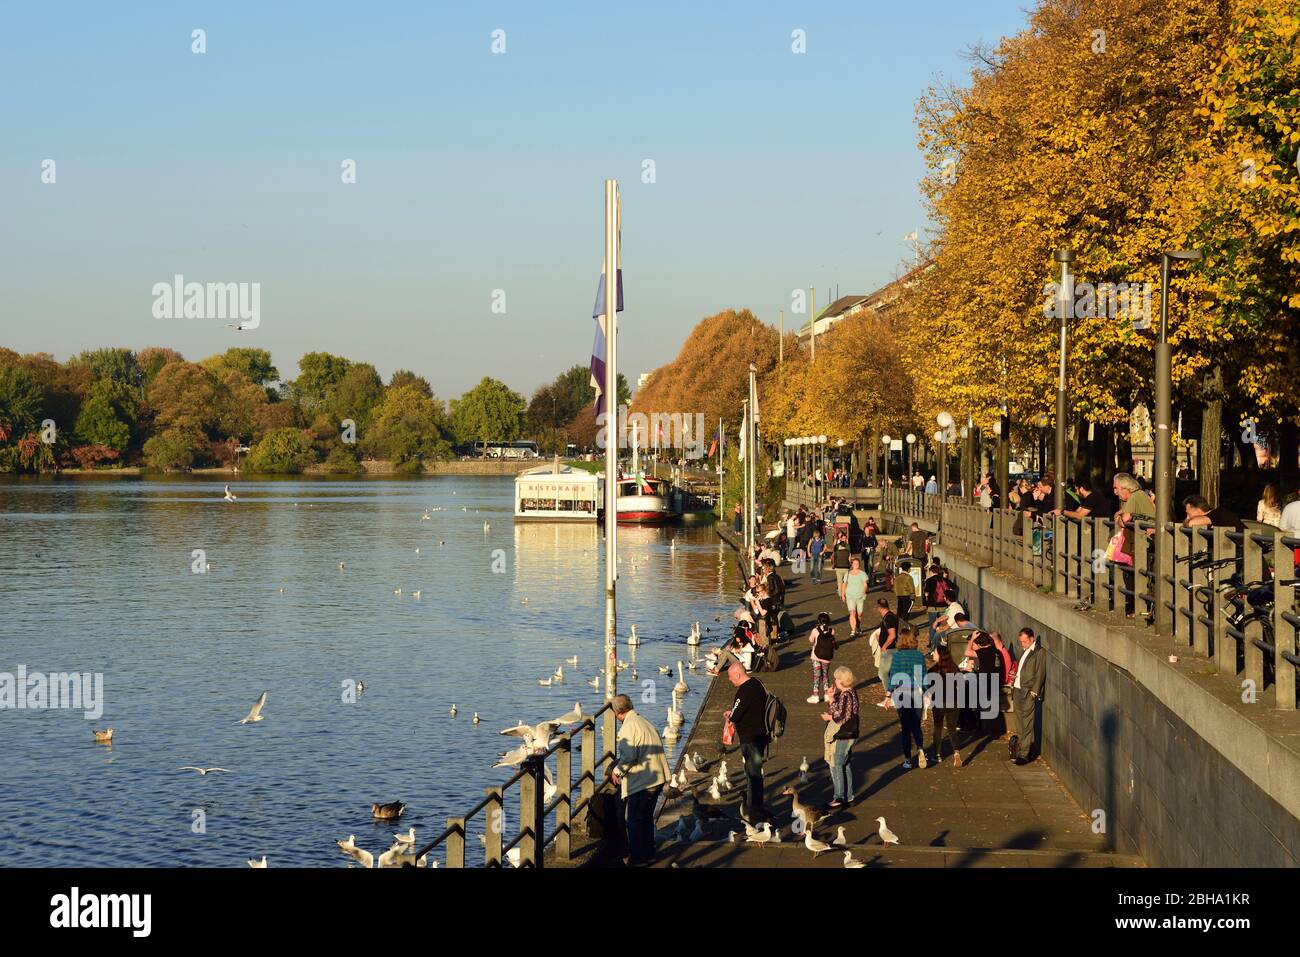 Europe, Germany, Hamburg, Binnenalster (Inner Alster Lake), autumn, Promenade at Ballindamm, Stock Photo